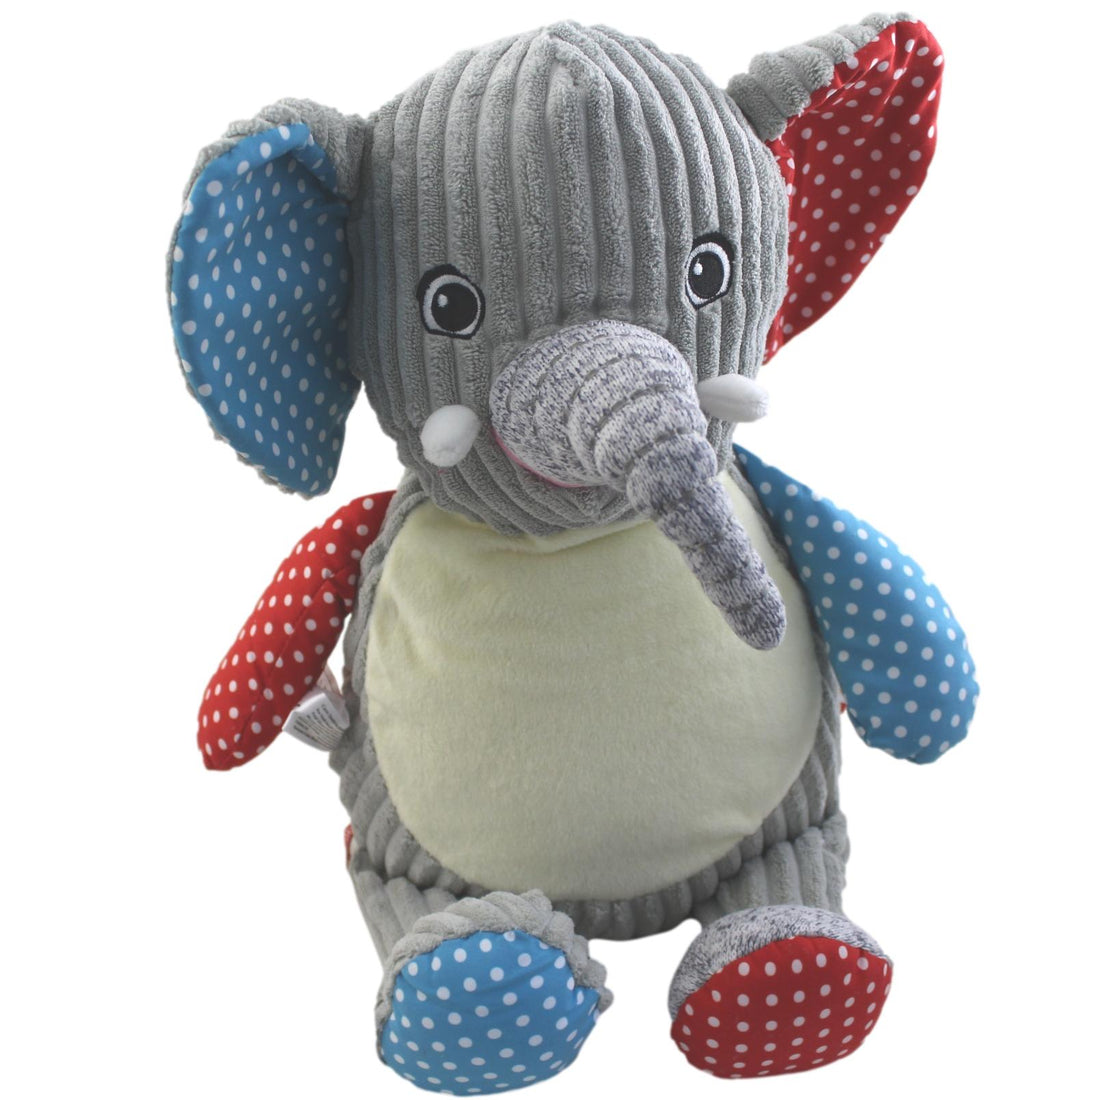 Elephant Teddy Soft Toy for a Baby Boy